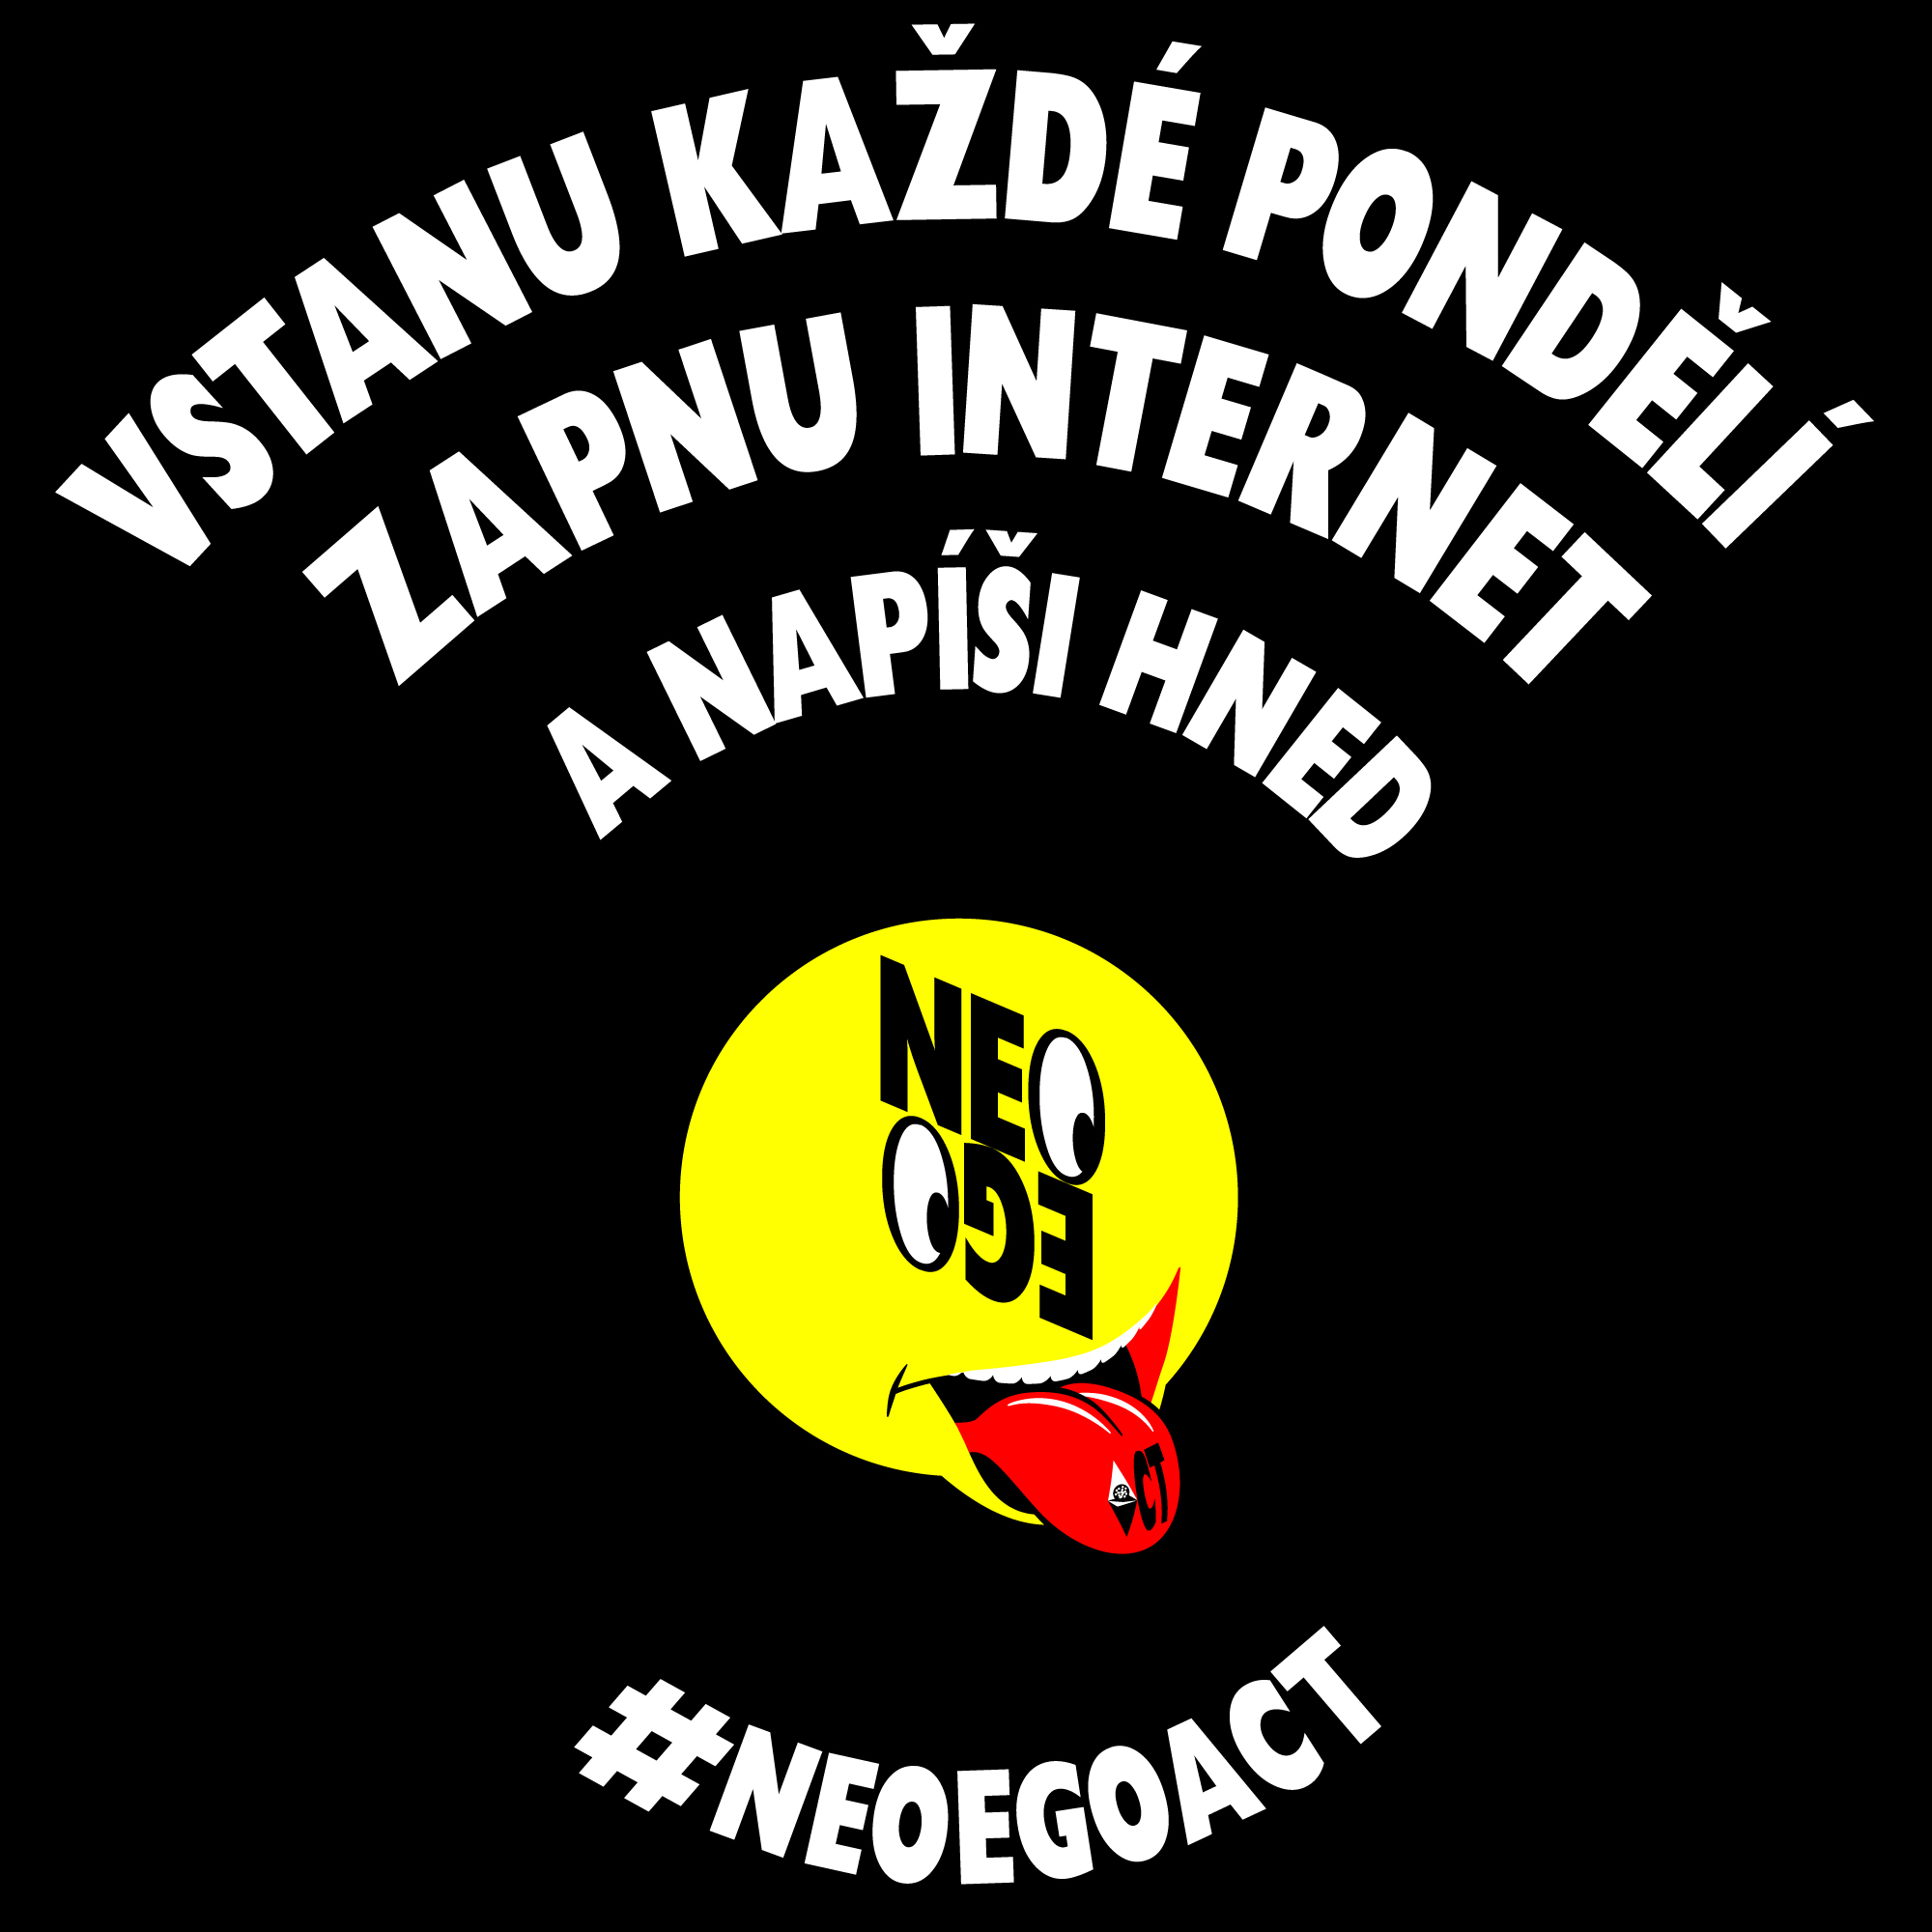 #neoegoact #neoego #neo #ego #act neoegoact neoego ego